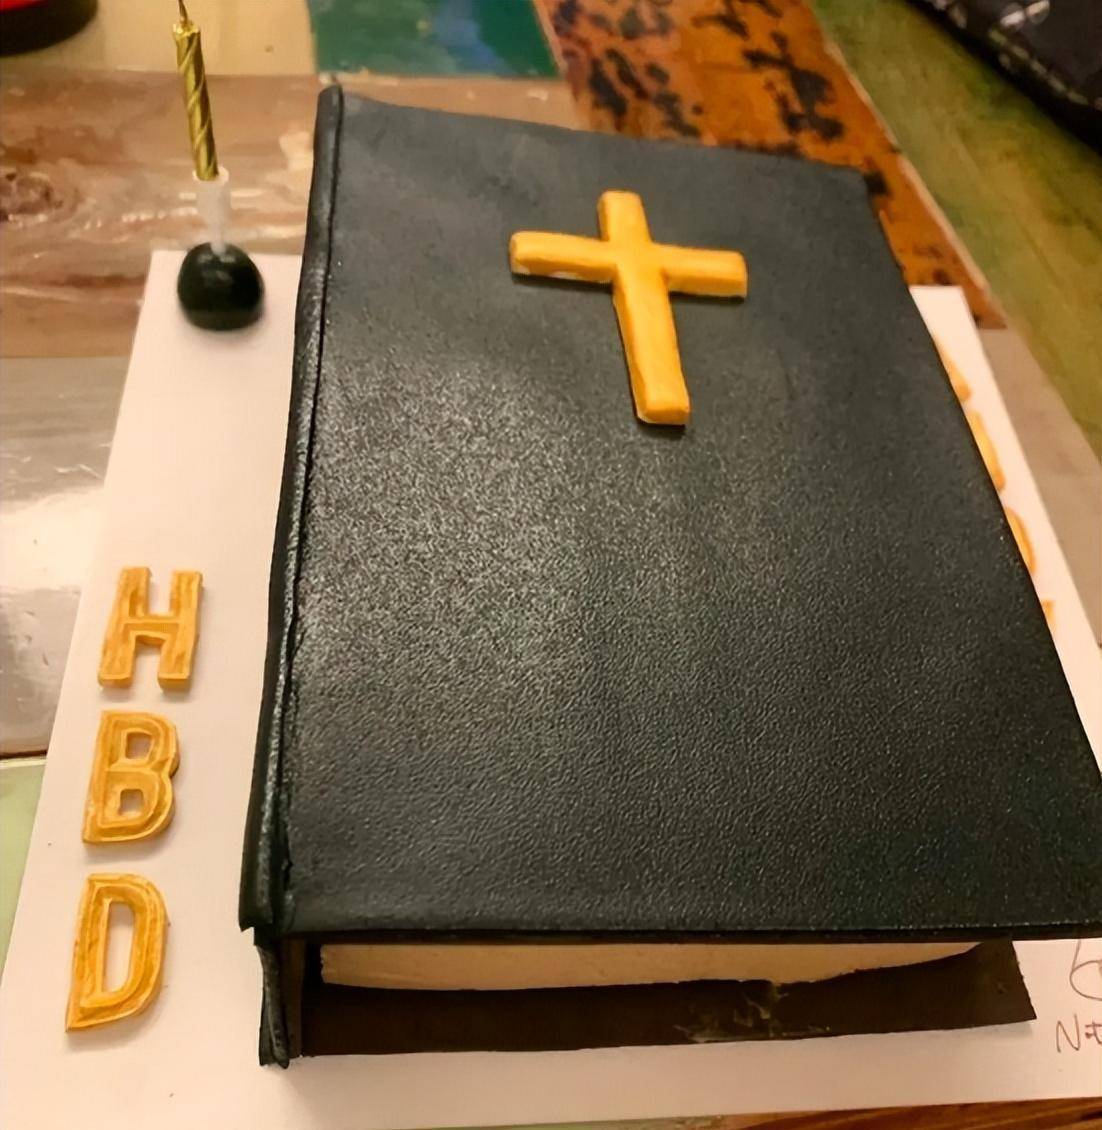 基督教专用蛋糕图片图片